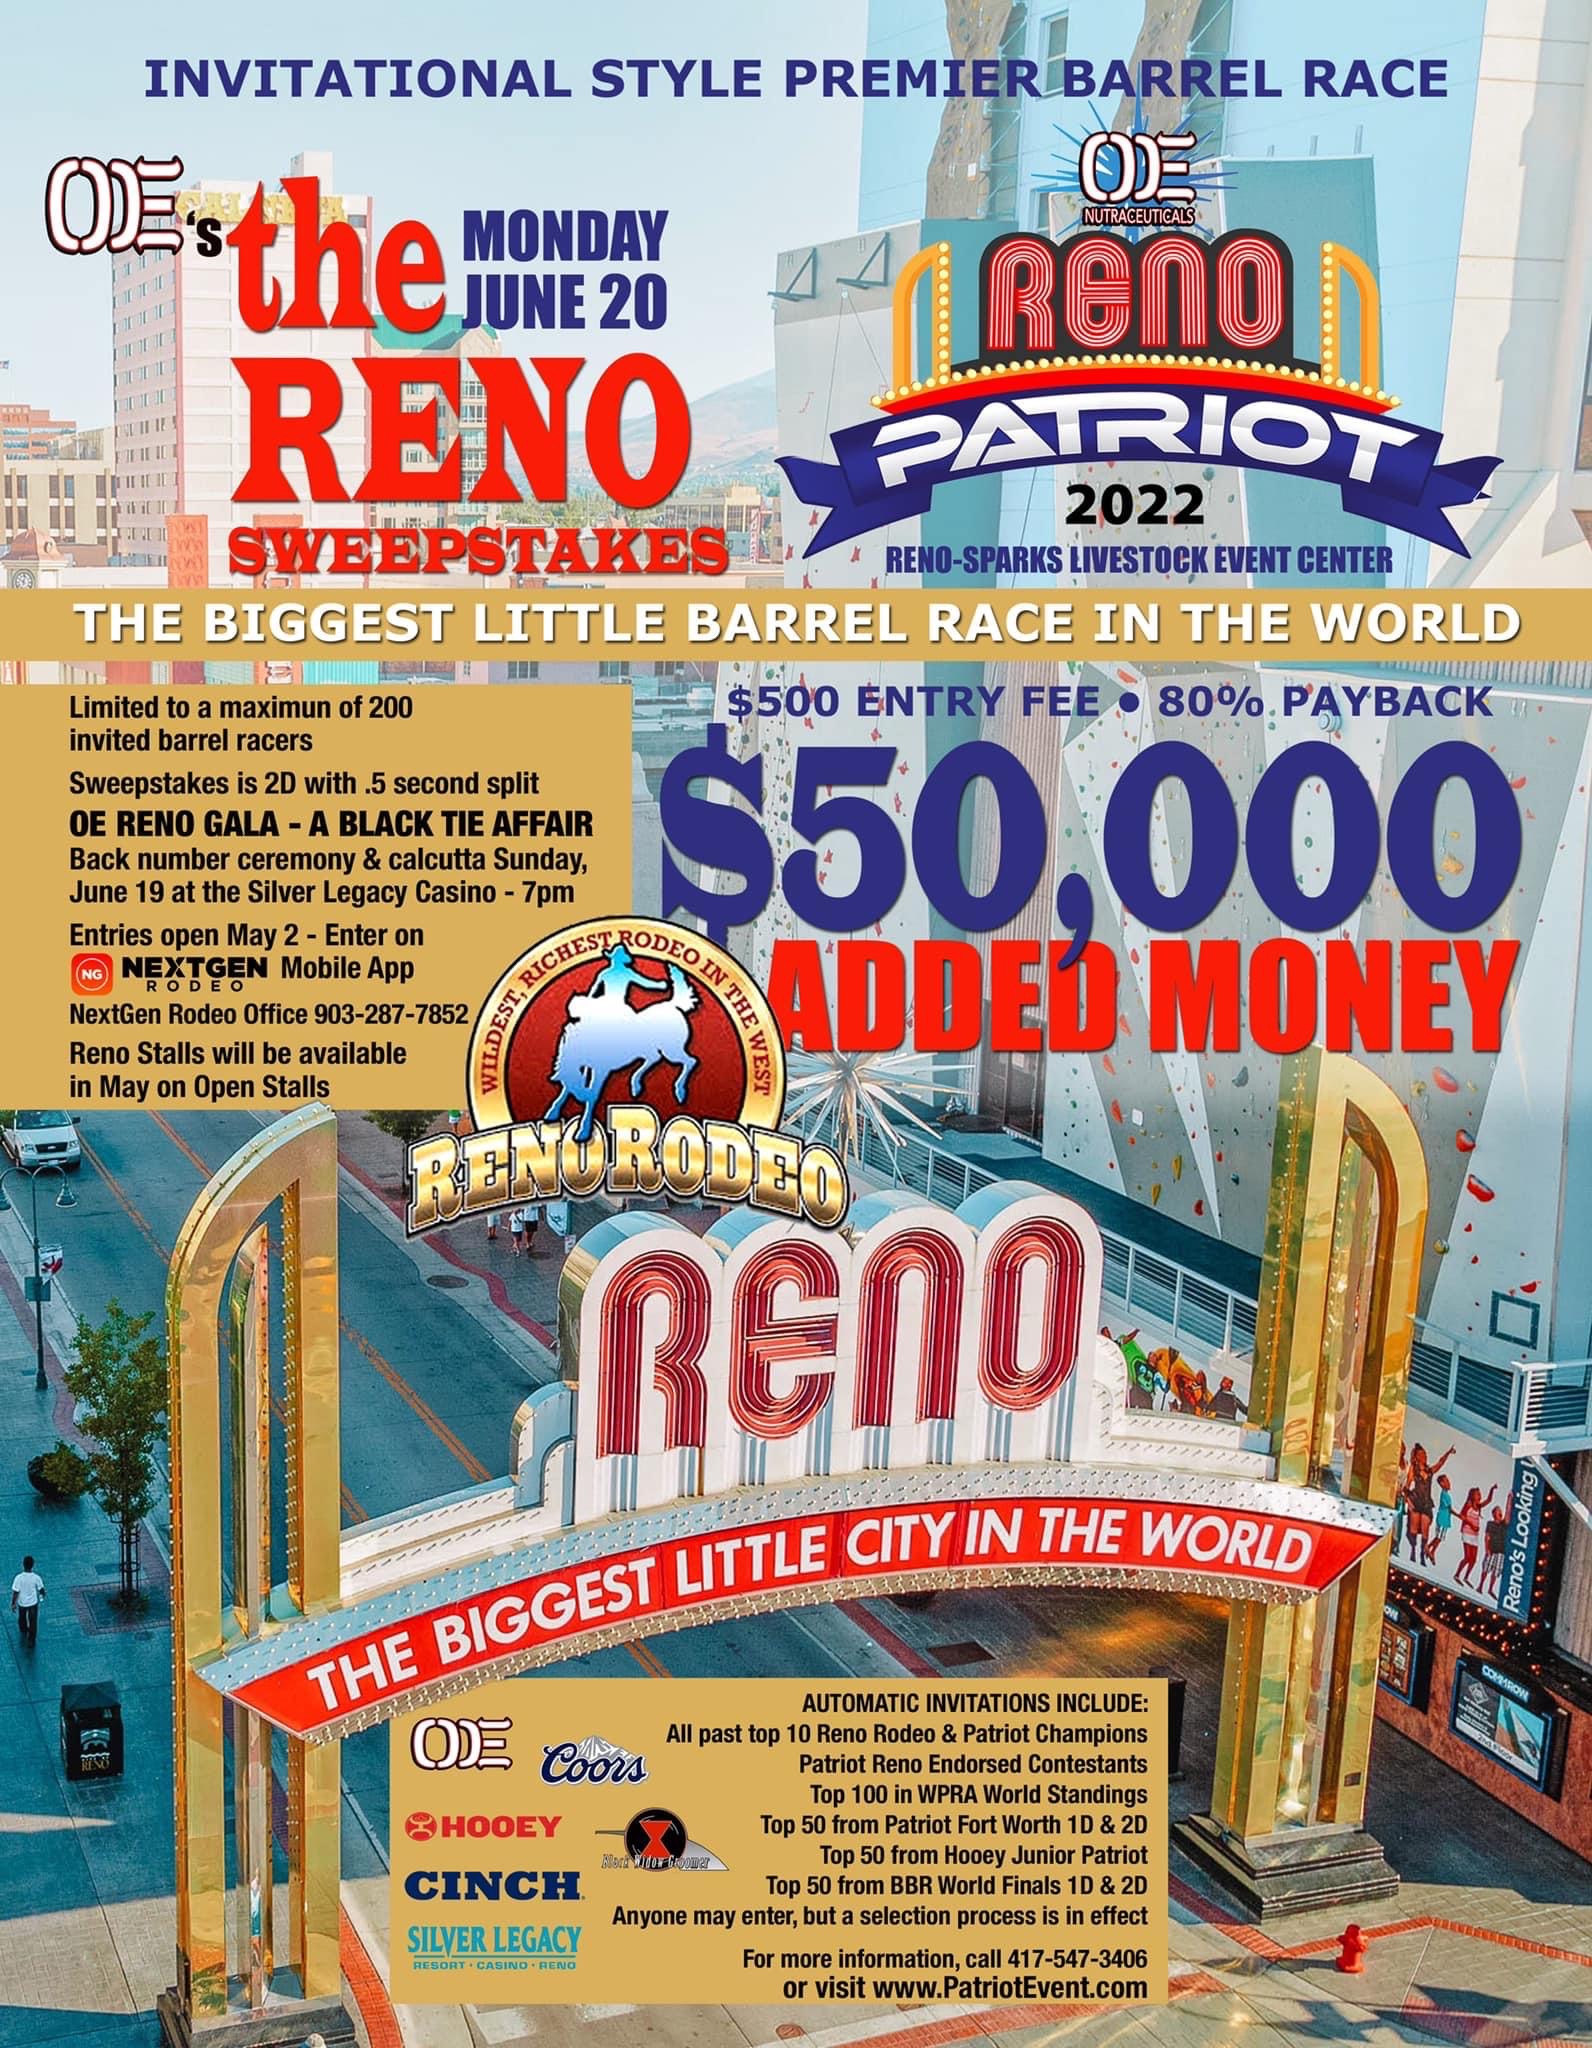 The Reno Sweepstakes